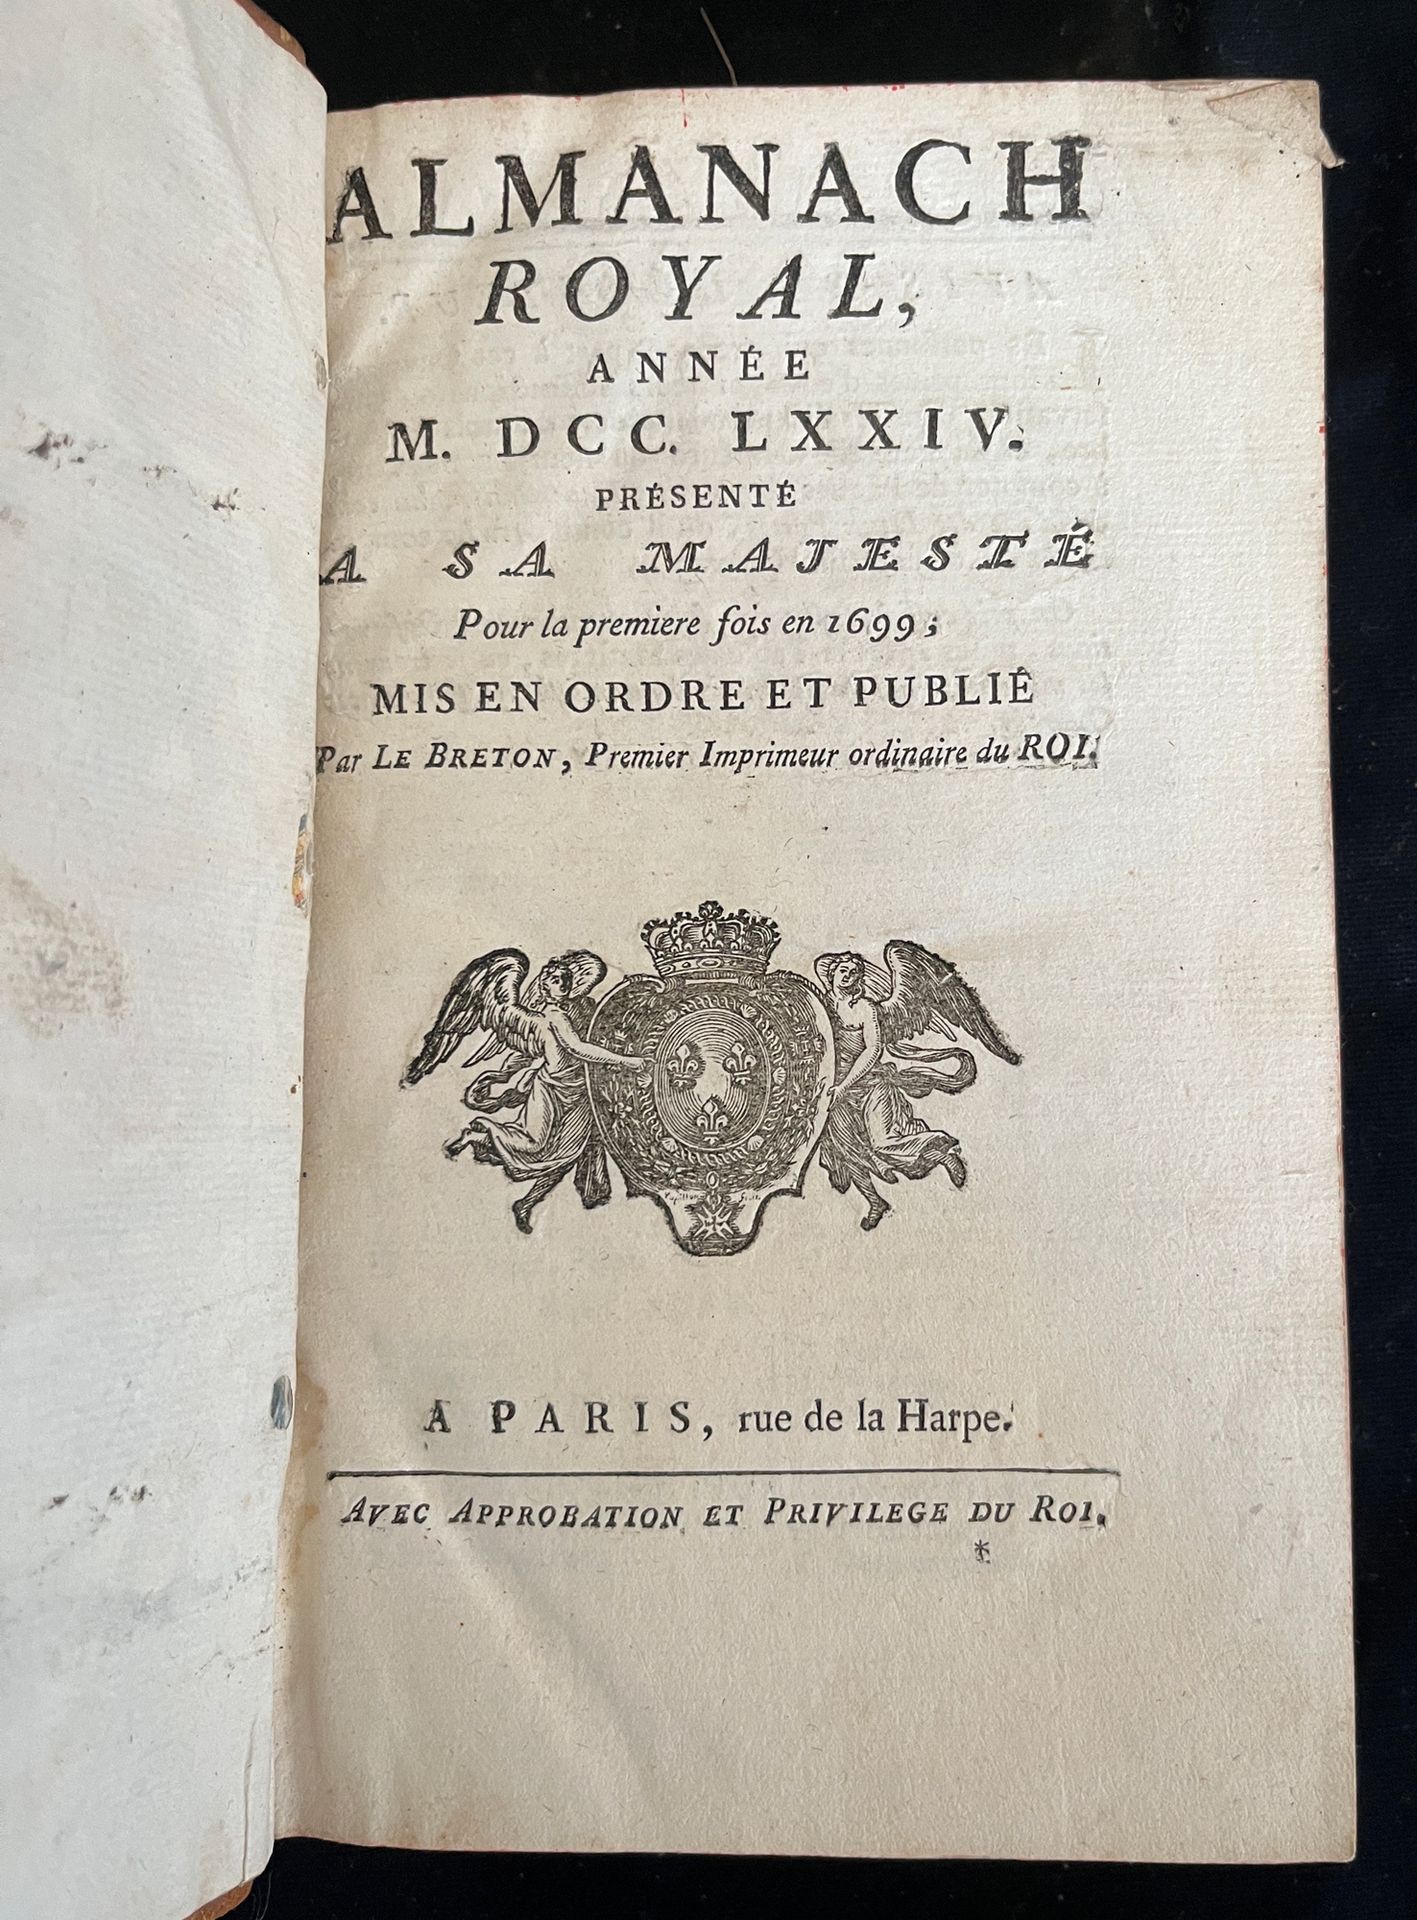 Null [ALMANACH]
Almanach royal pour l'an MDCCLXXIV. Paris, chez Le breton rue de&hellip;